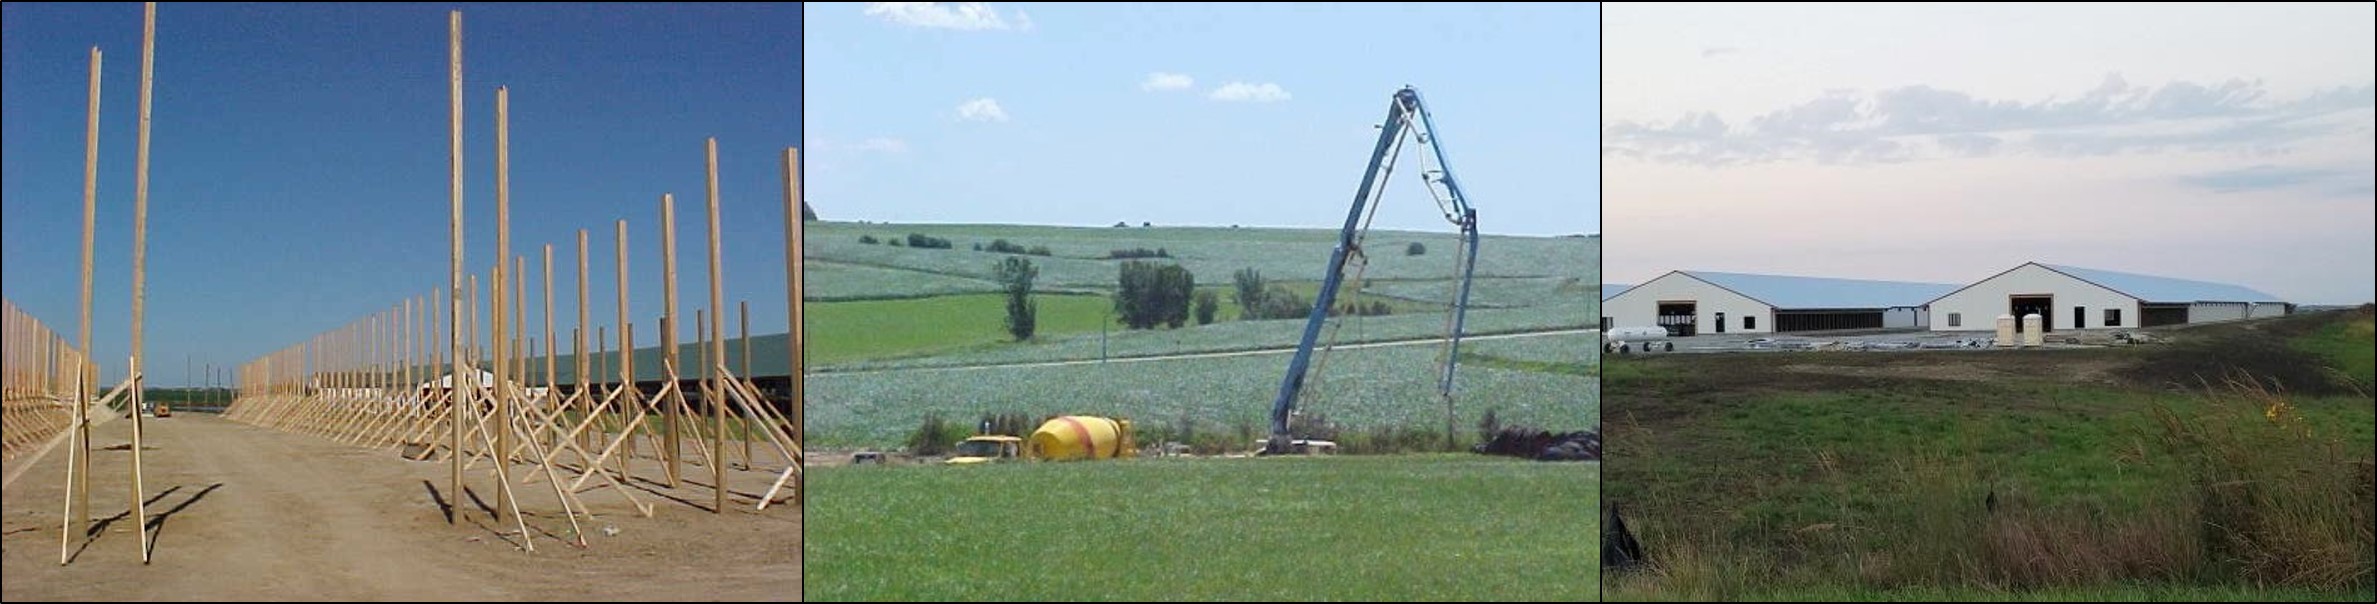 photos during construction of a livestock facility